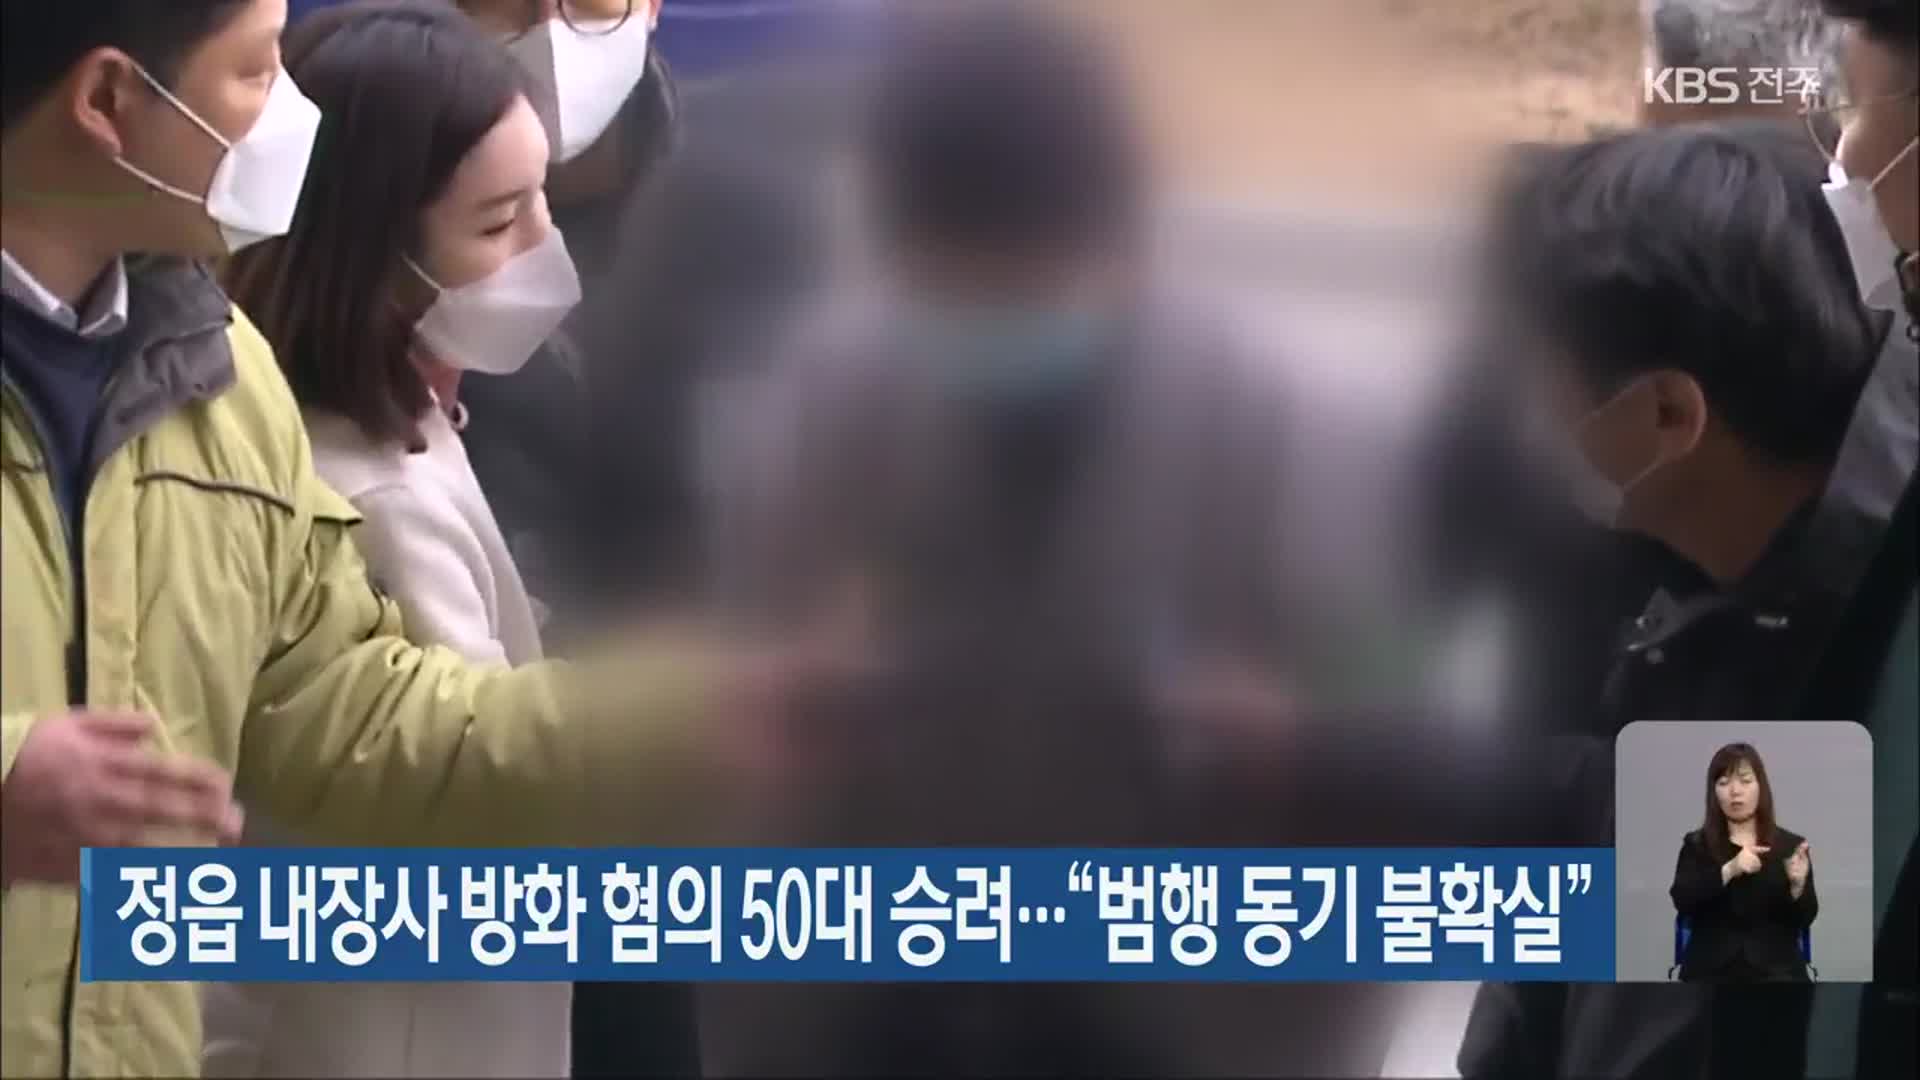 정읍 내장사 방화 혐의 50대 승려…“범행 동기 불확실”